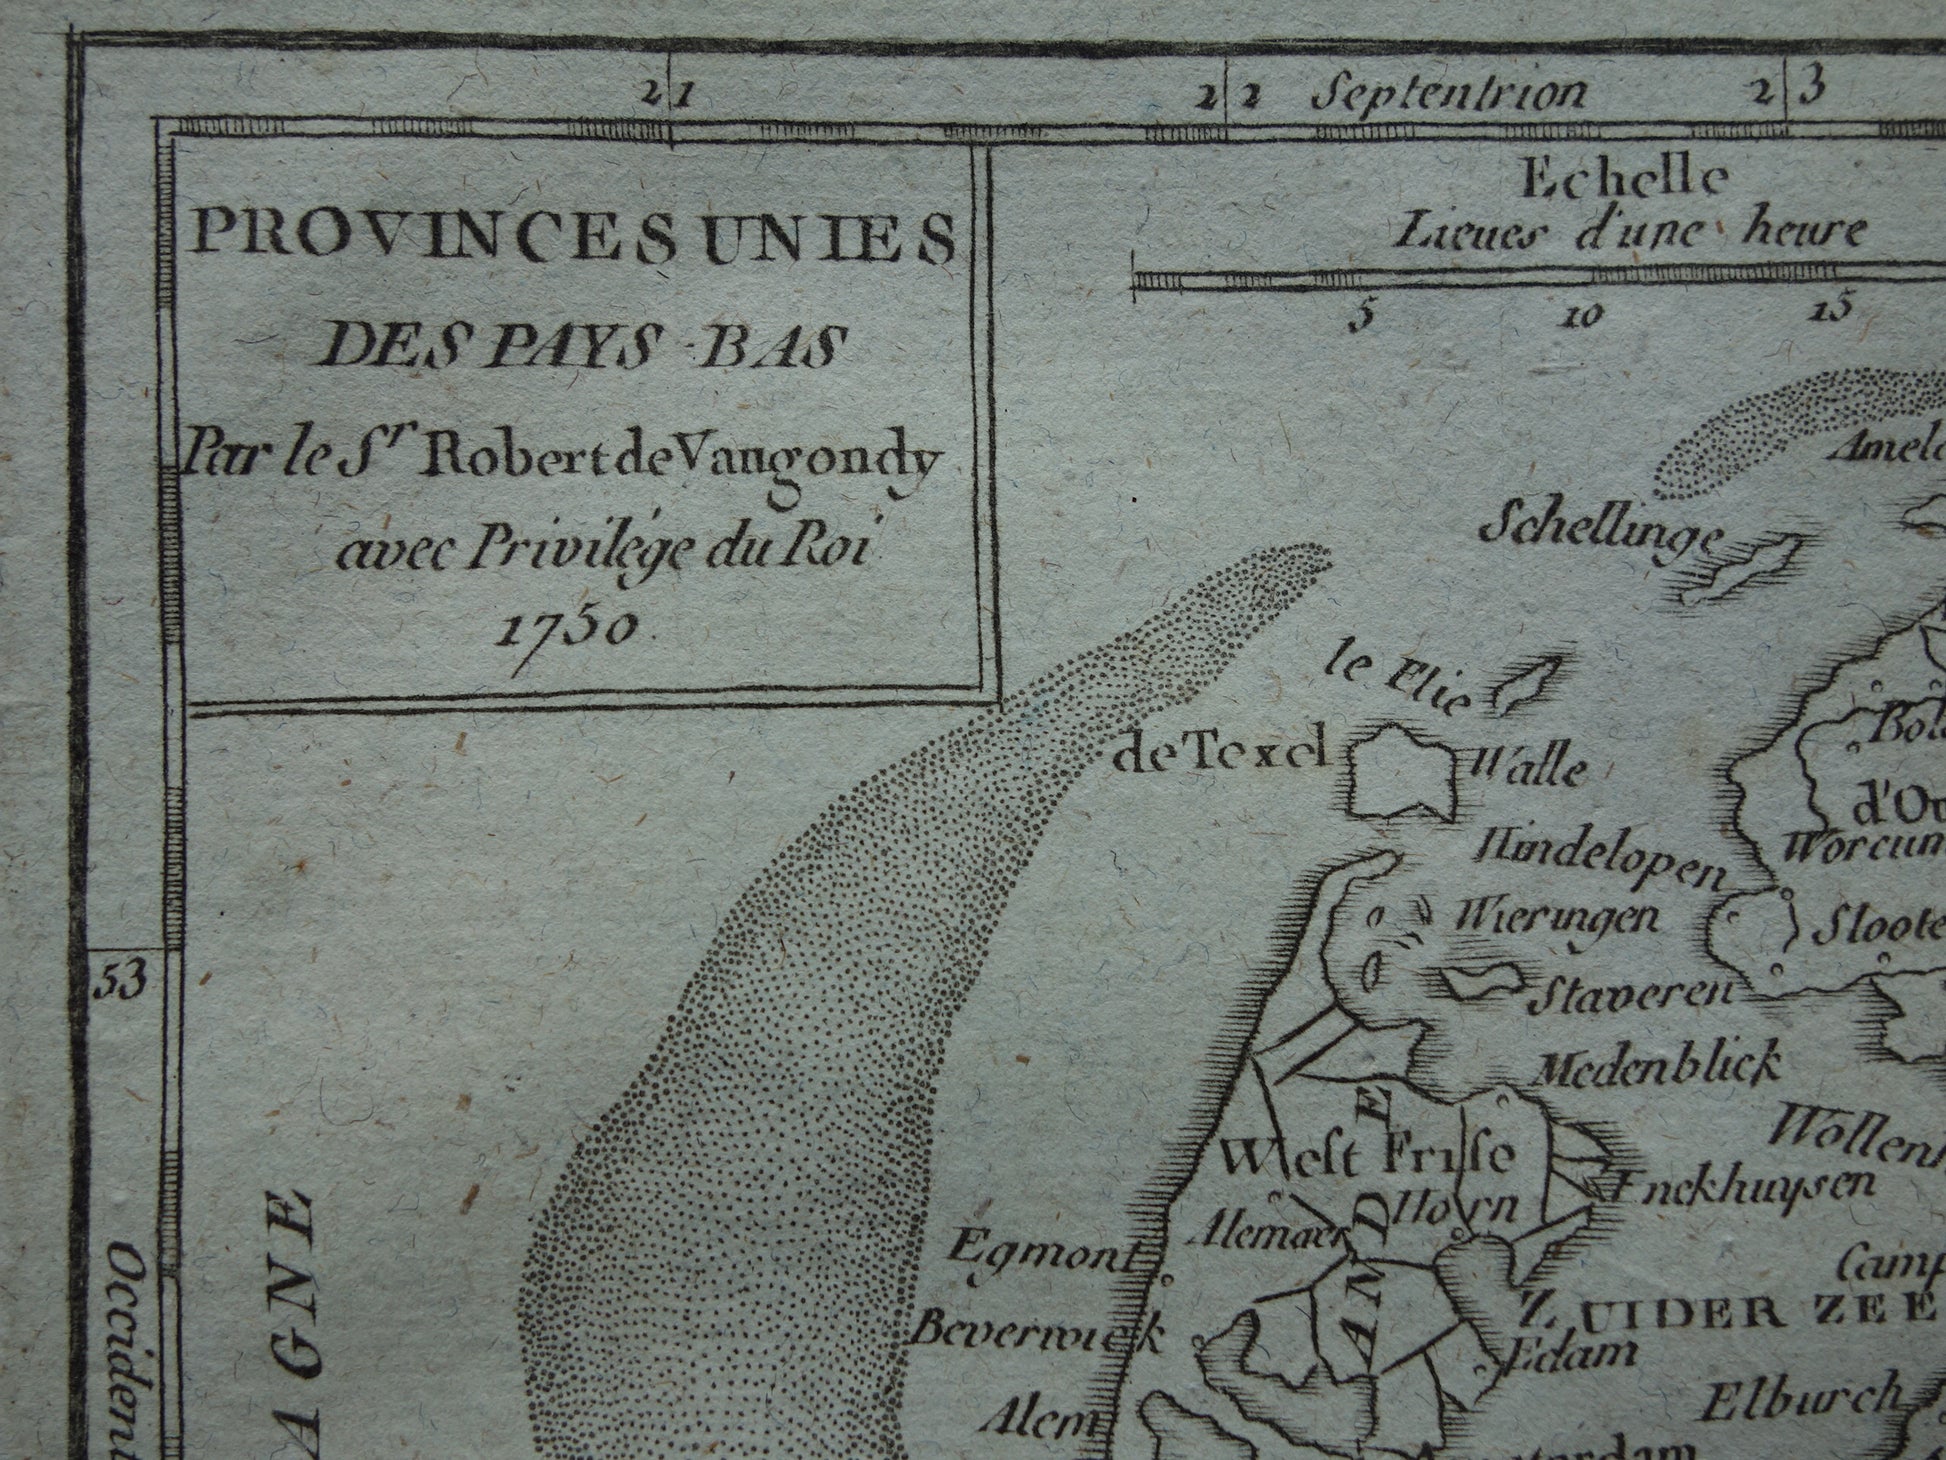 Provinces Unies des Pays Bas Robert de Vaugondy 1750